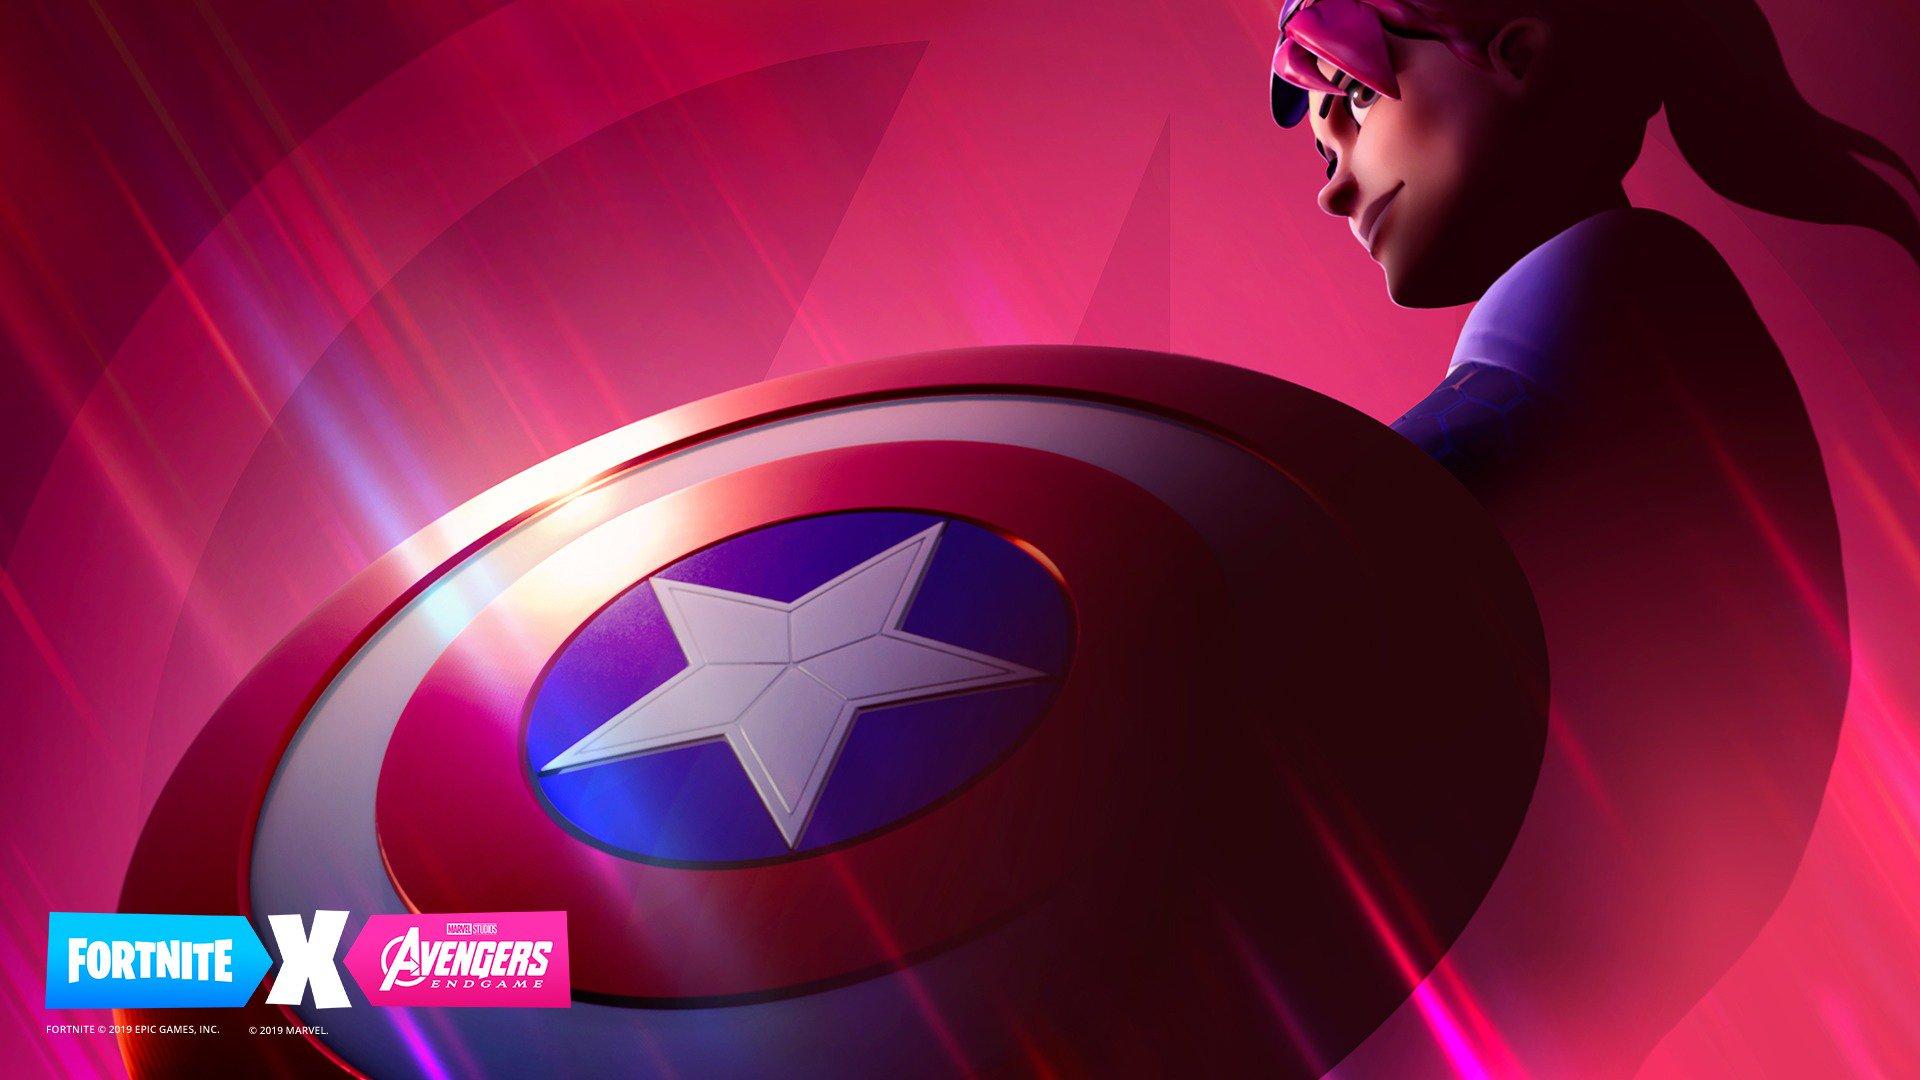 Captain America Fortnite Outfit Avengers Endgame